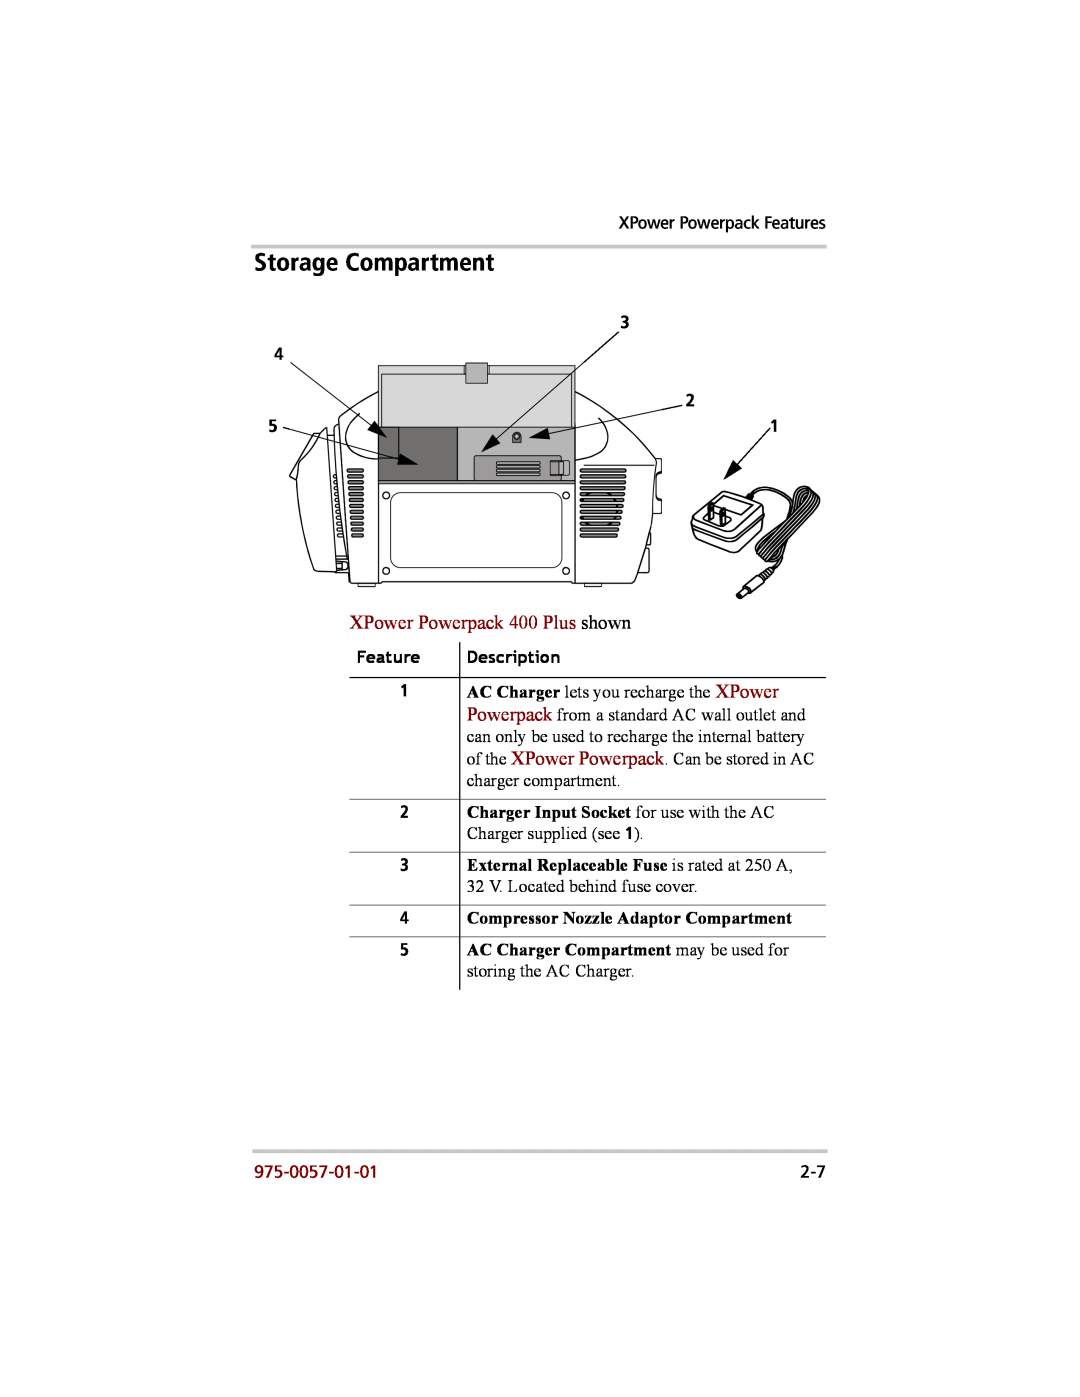 Xantrex Technology 200 manual Storage Compartment, XPower Powerpack 400 Plus shown, Feature, Description, 975-0057-01-01 